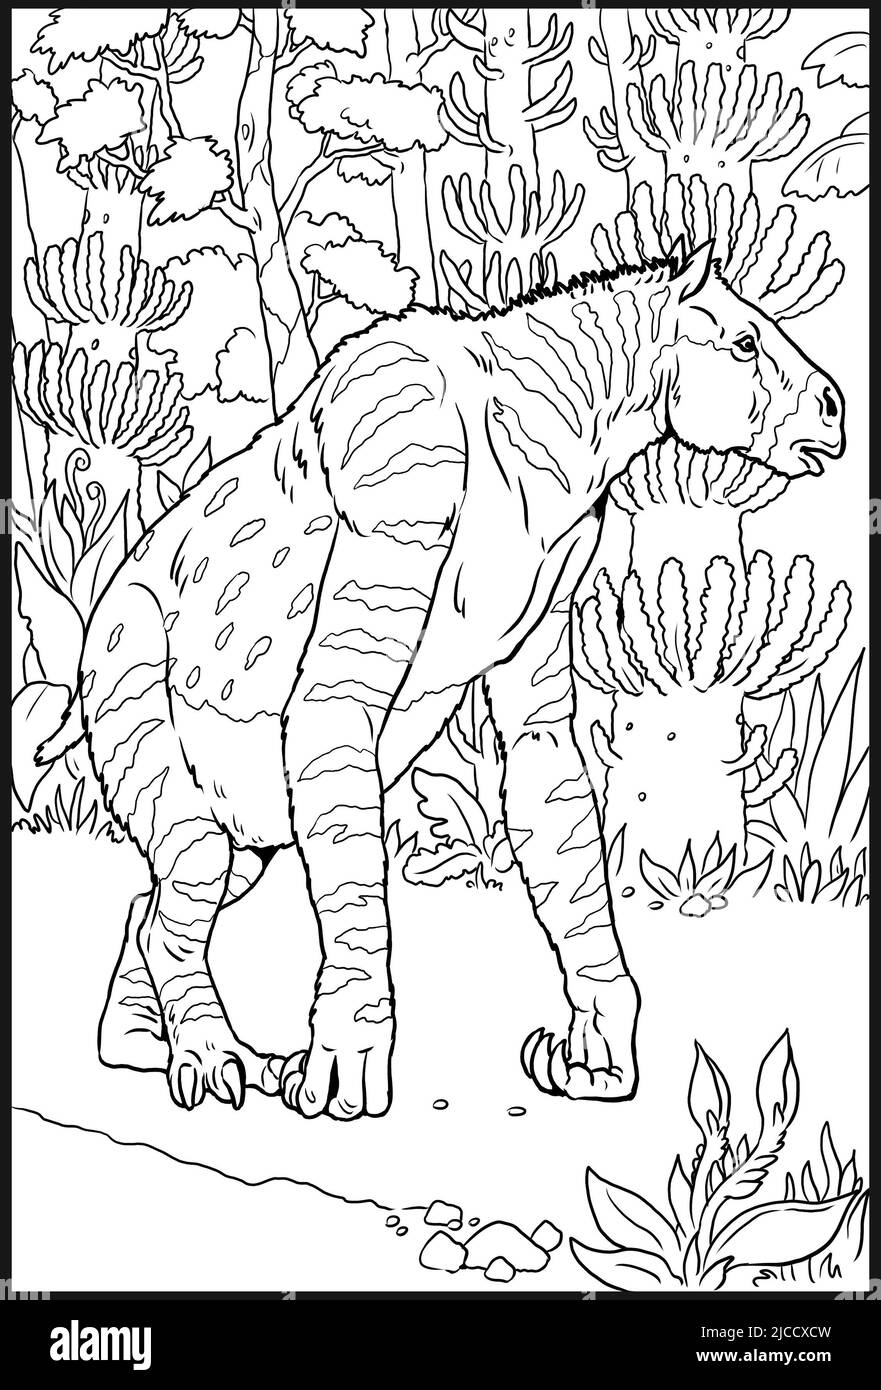 Animal préhistorique - Chalicotherium. Dessin avec des animaux éteints. Modèle pour livre de coloriage. Banque D'Images